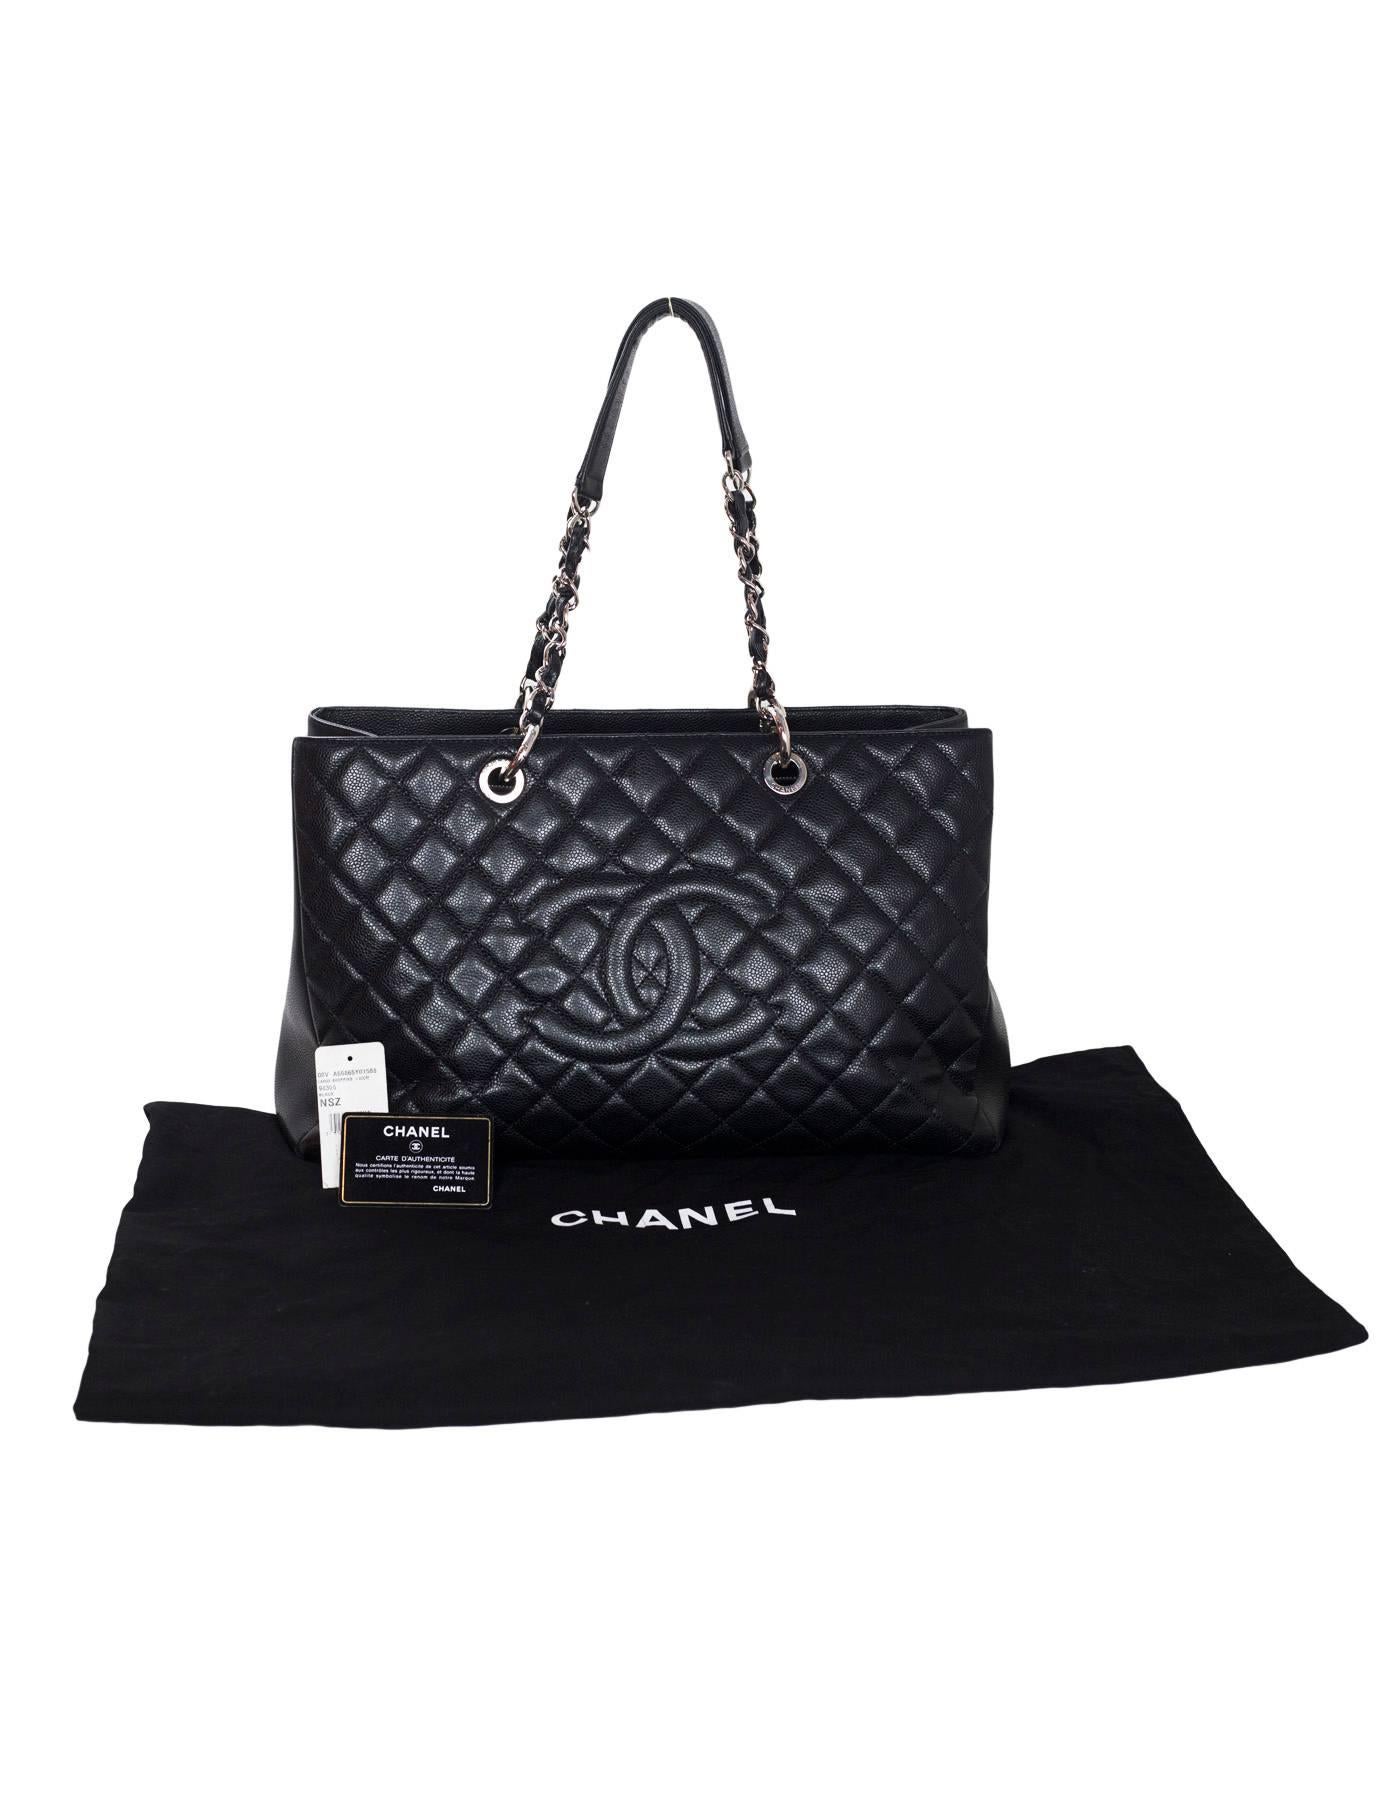 Chanel Black Caviar Leather XL Grand Shopper Tote GST Bag 5